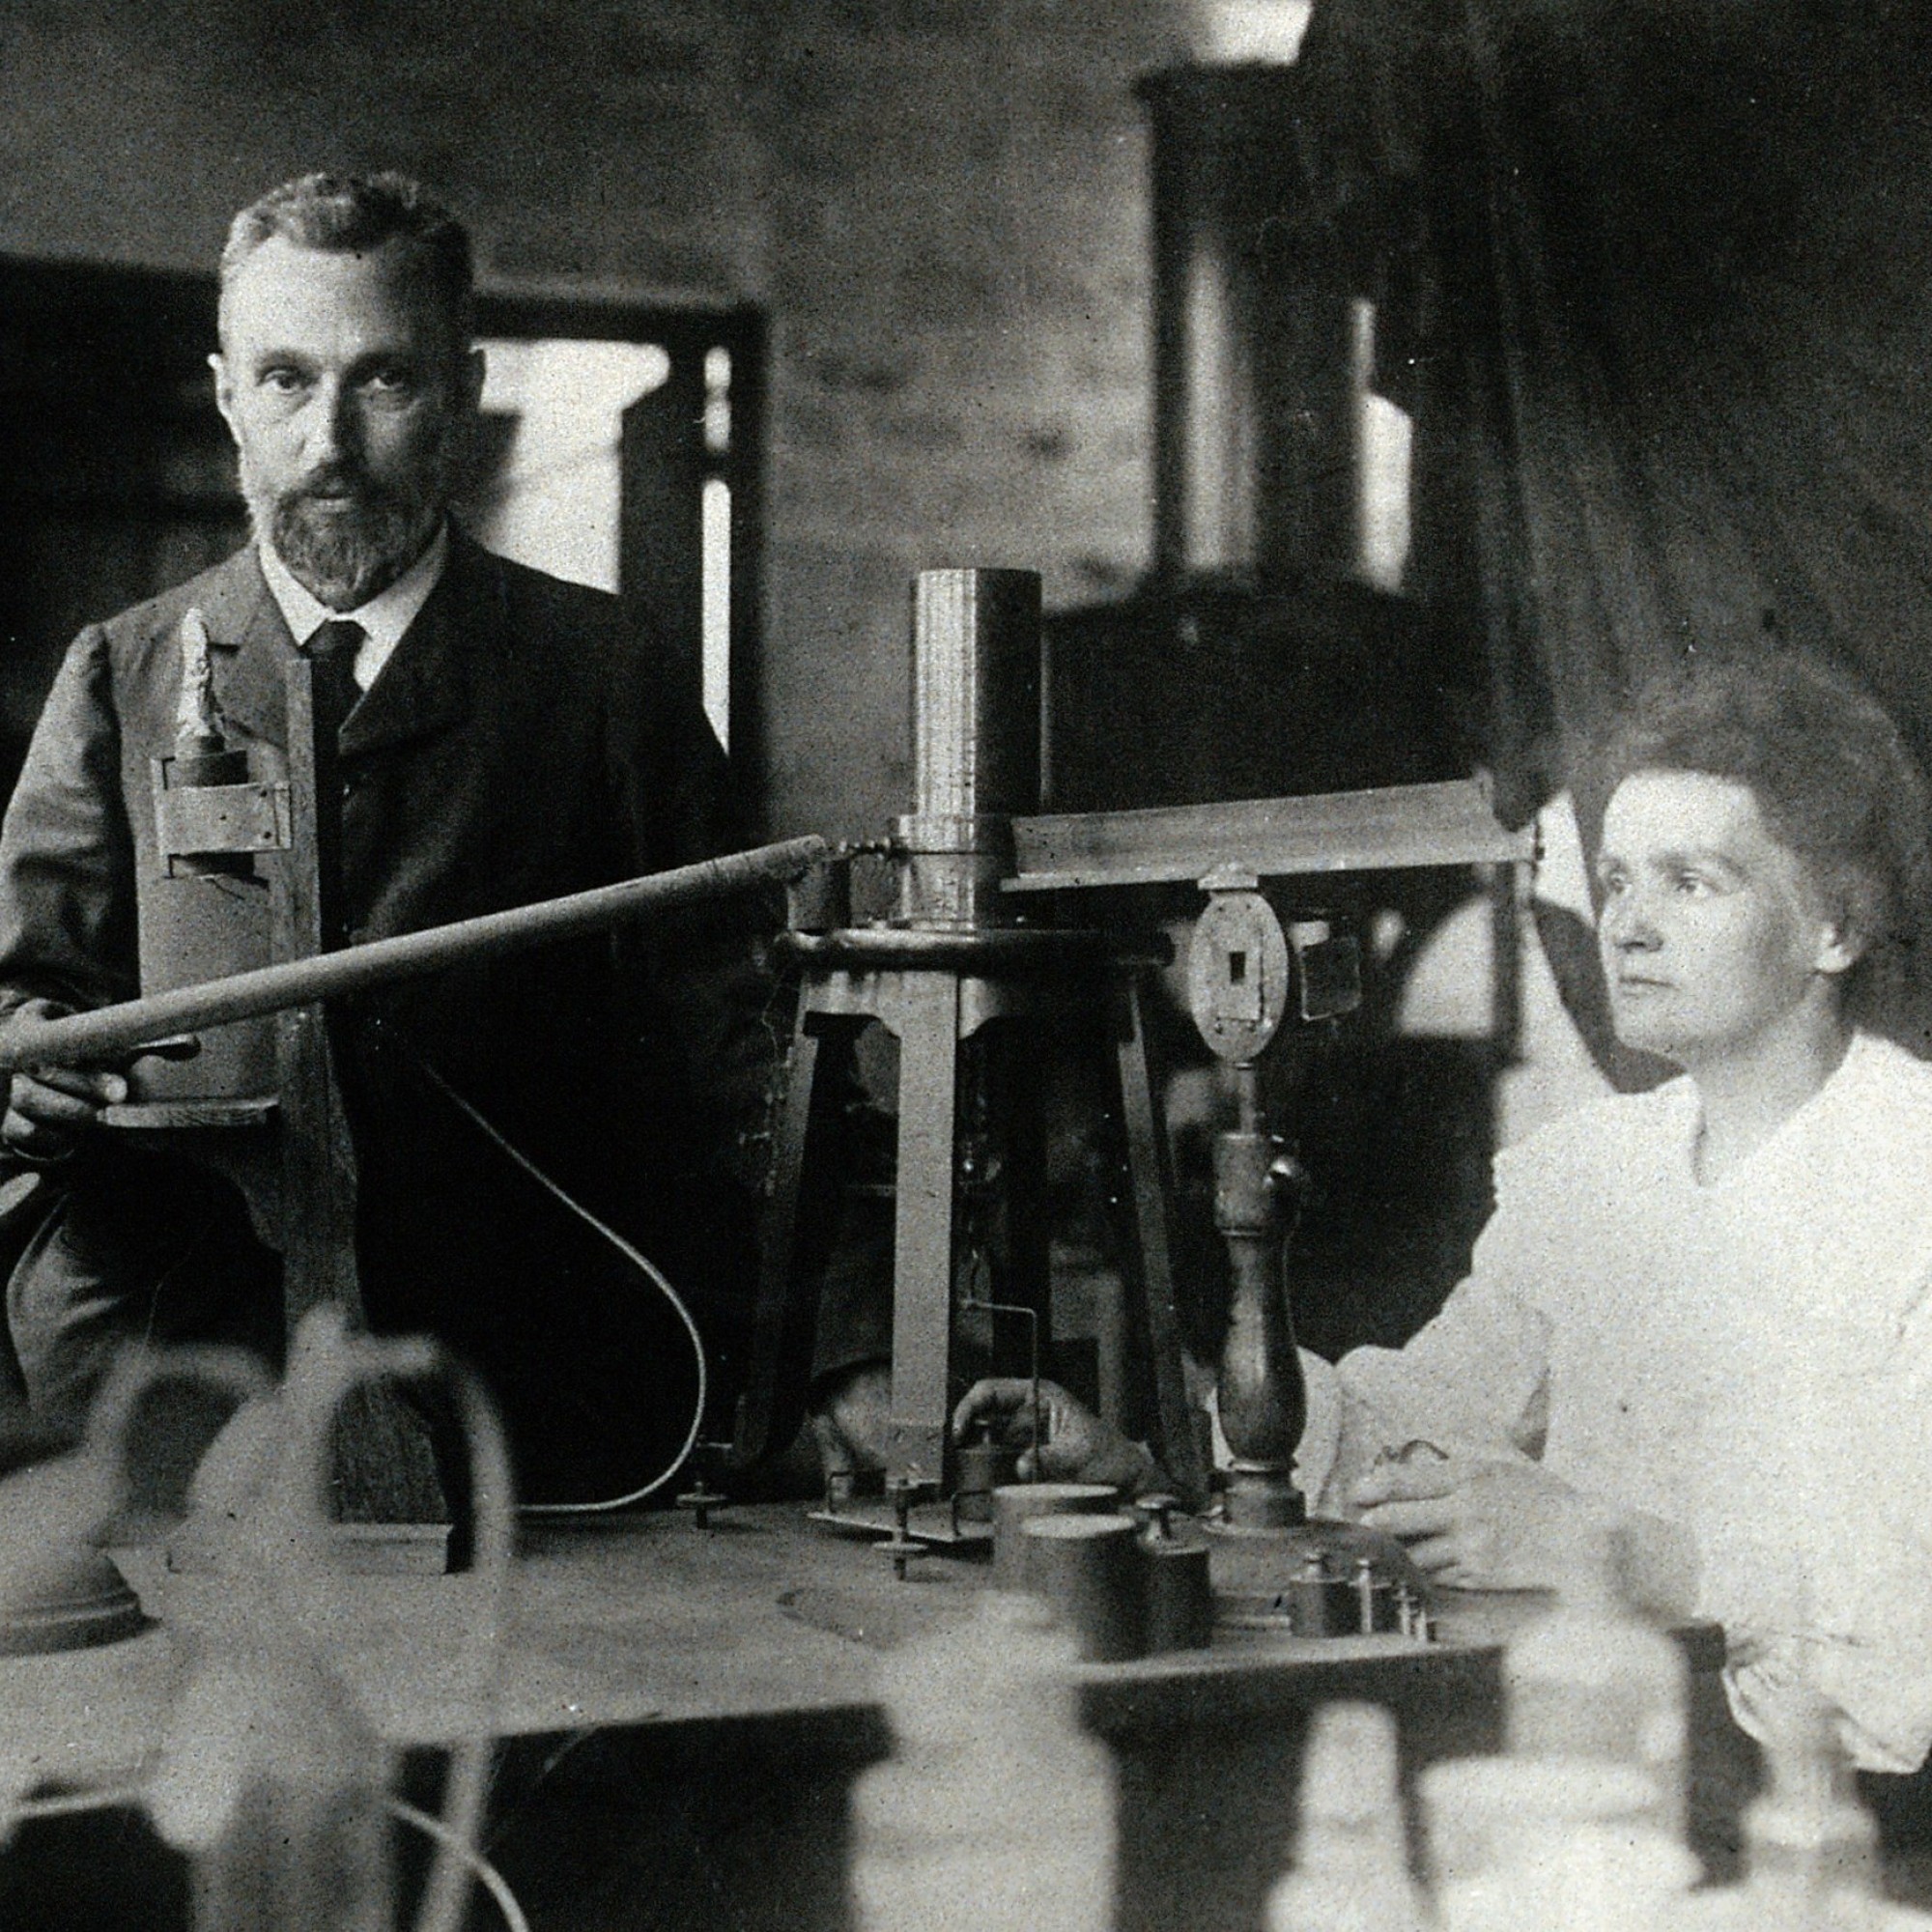 Pierre und Marie Curie in ihrem Laboratorium in der Rue Cuvier, zirka 1904.